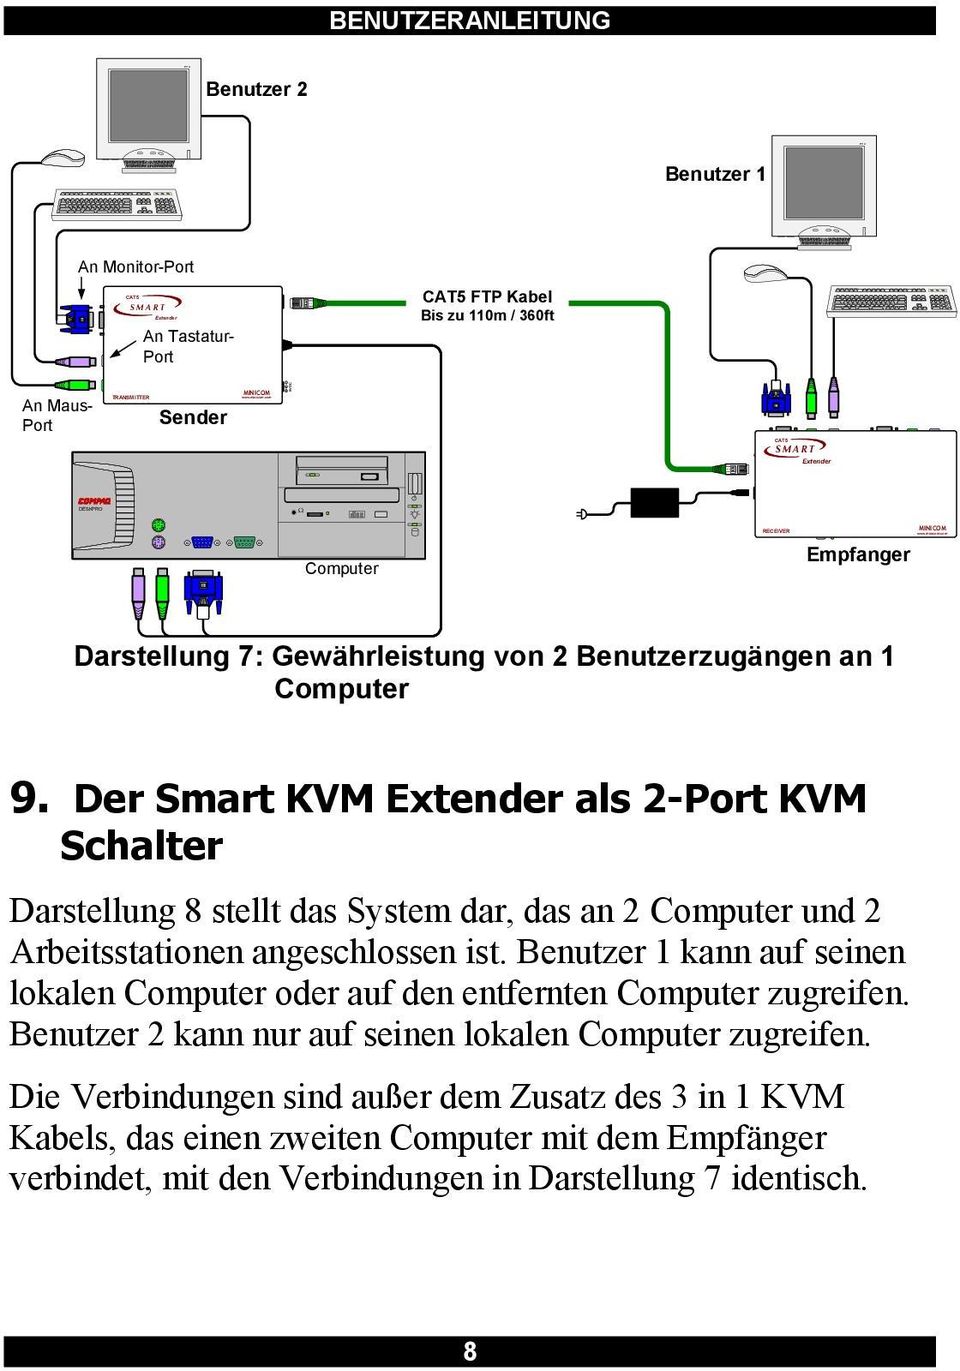 Der Smart KVM als 2-Port KVM Schalter Darstellung 8 stellt das System dar, das an 2 Computer und 2 Arbeitsstationen angeschlossen ist.